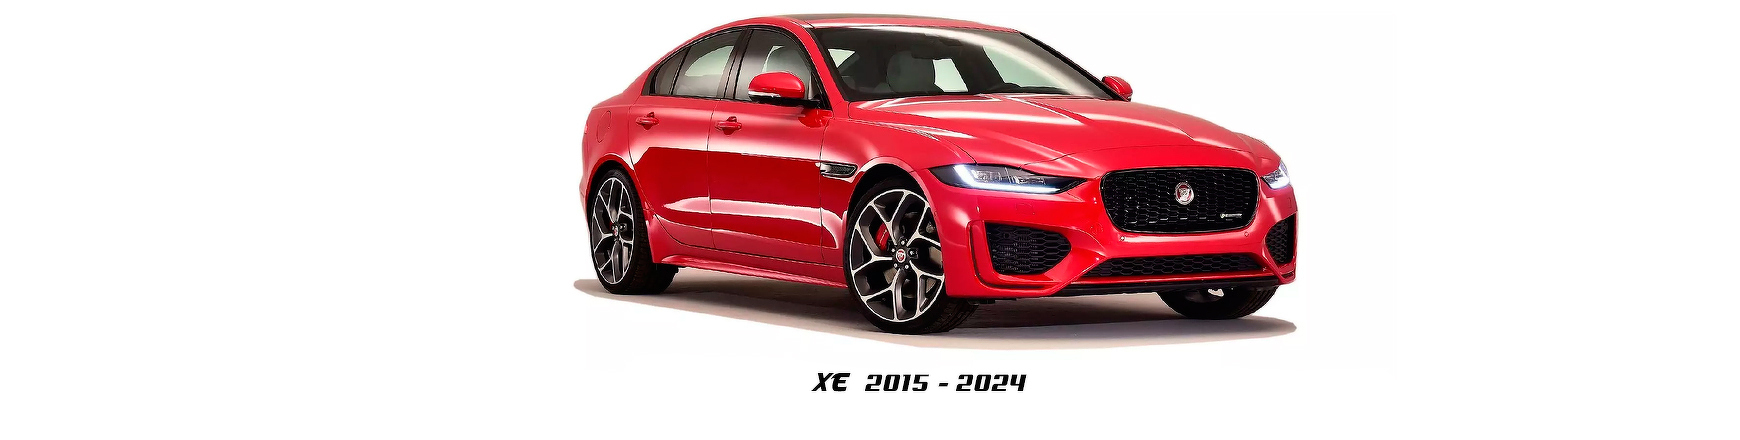 Repuestos de Jaguar XE (X760) de 2015 a 2024 | Veramauto.es